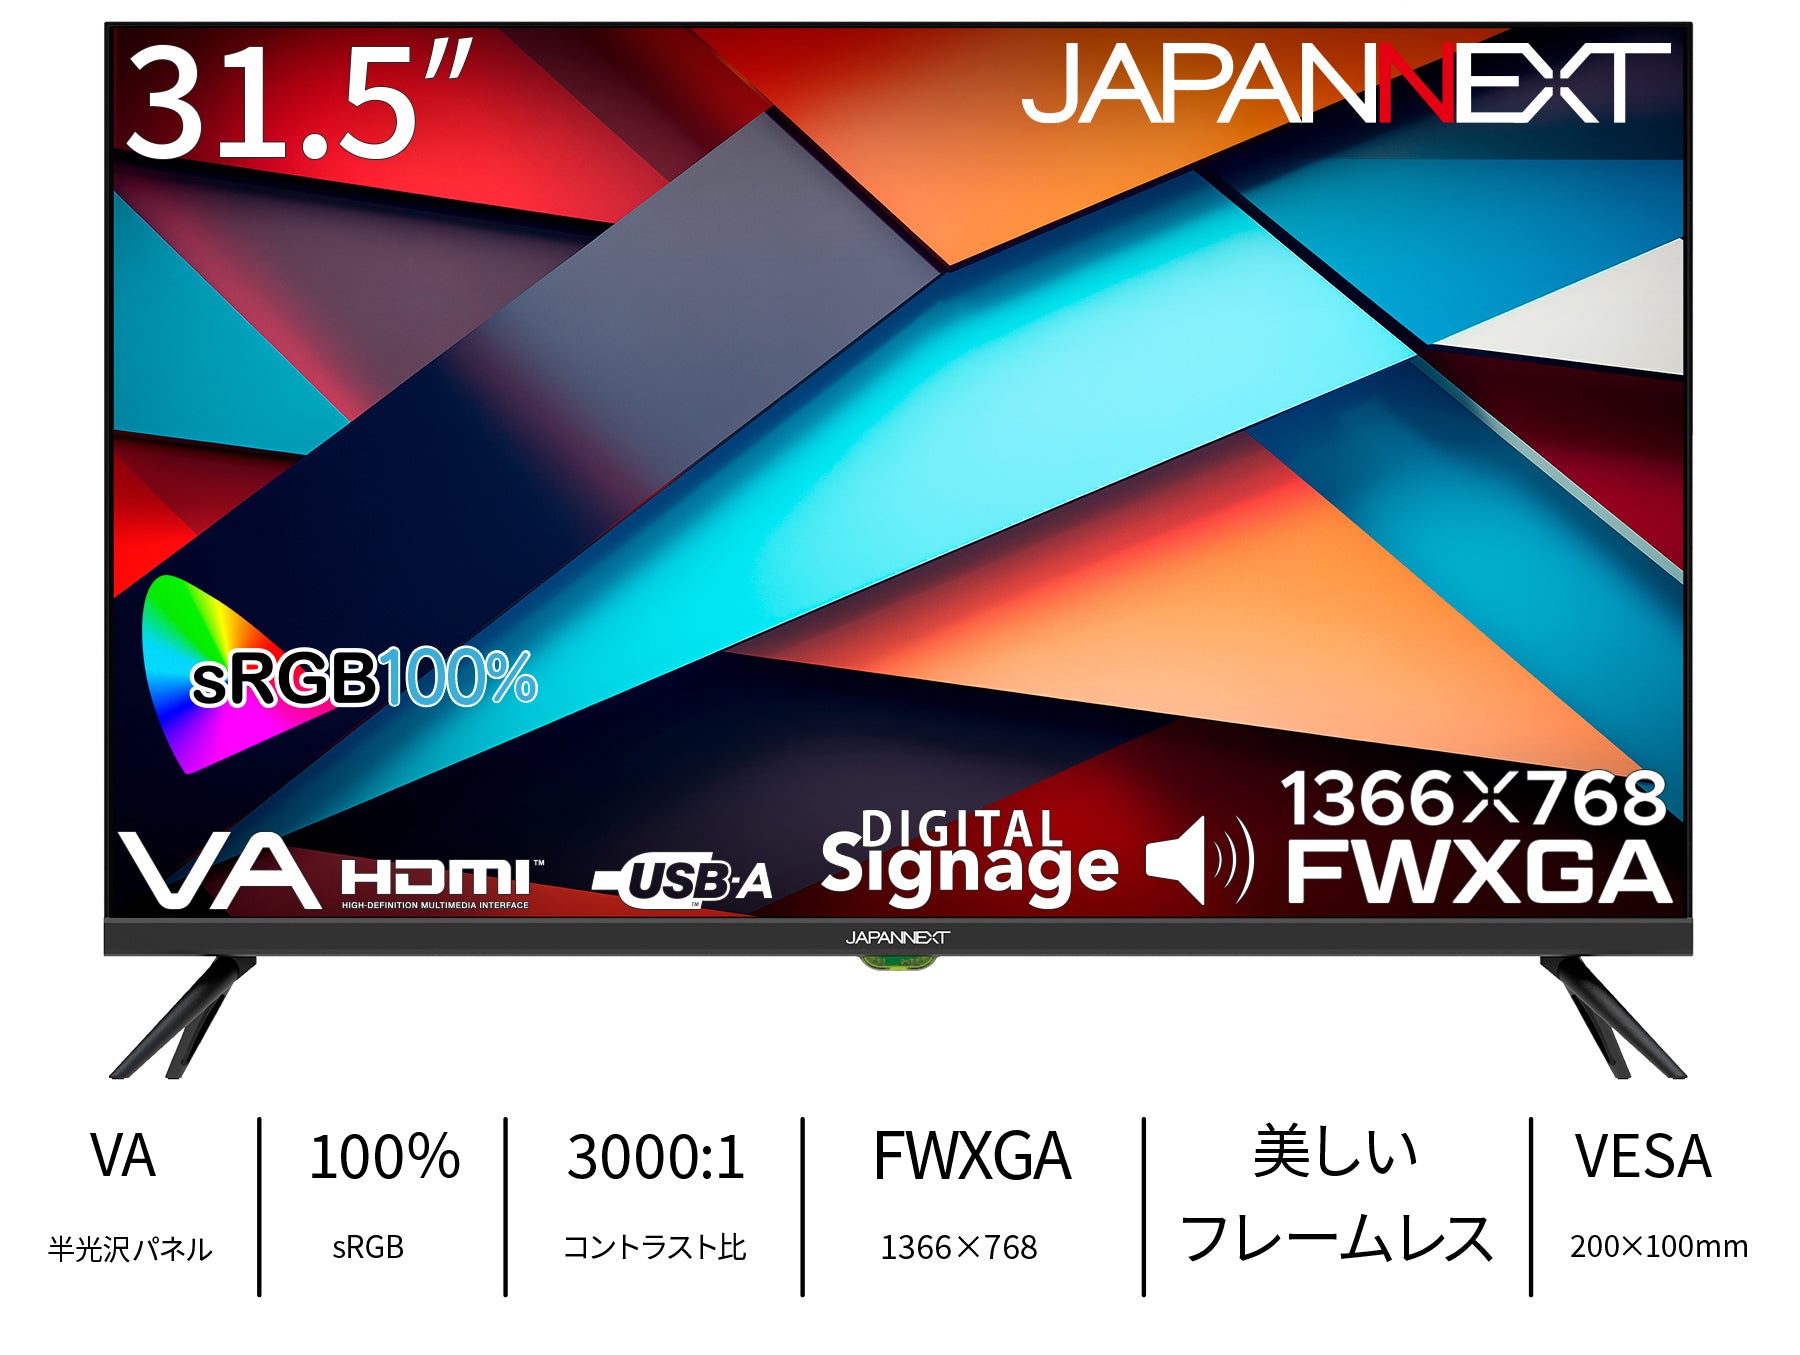 JAPANNEXT 31.5インチ VAパネル搭載 FWXGA(1366x768)解像度 液晶 